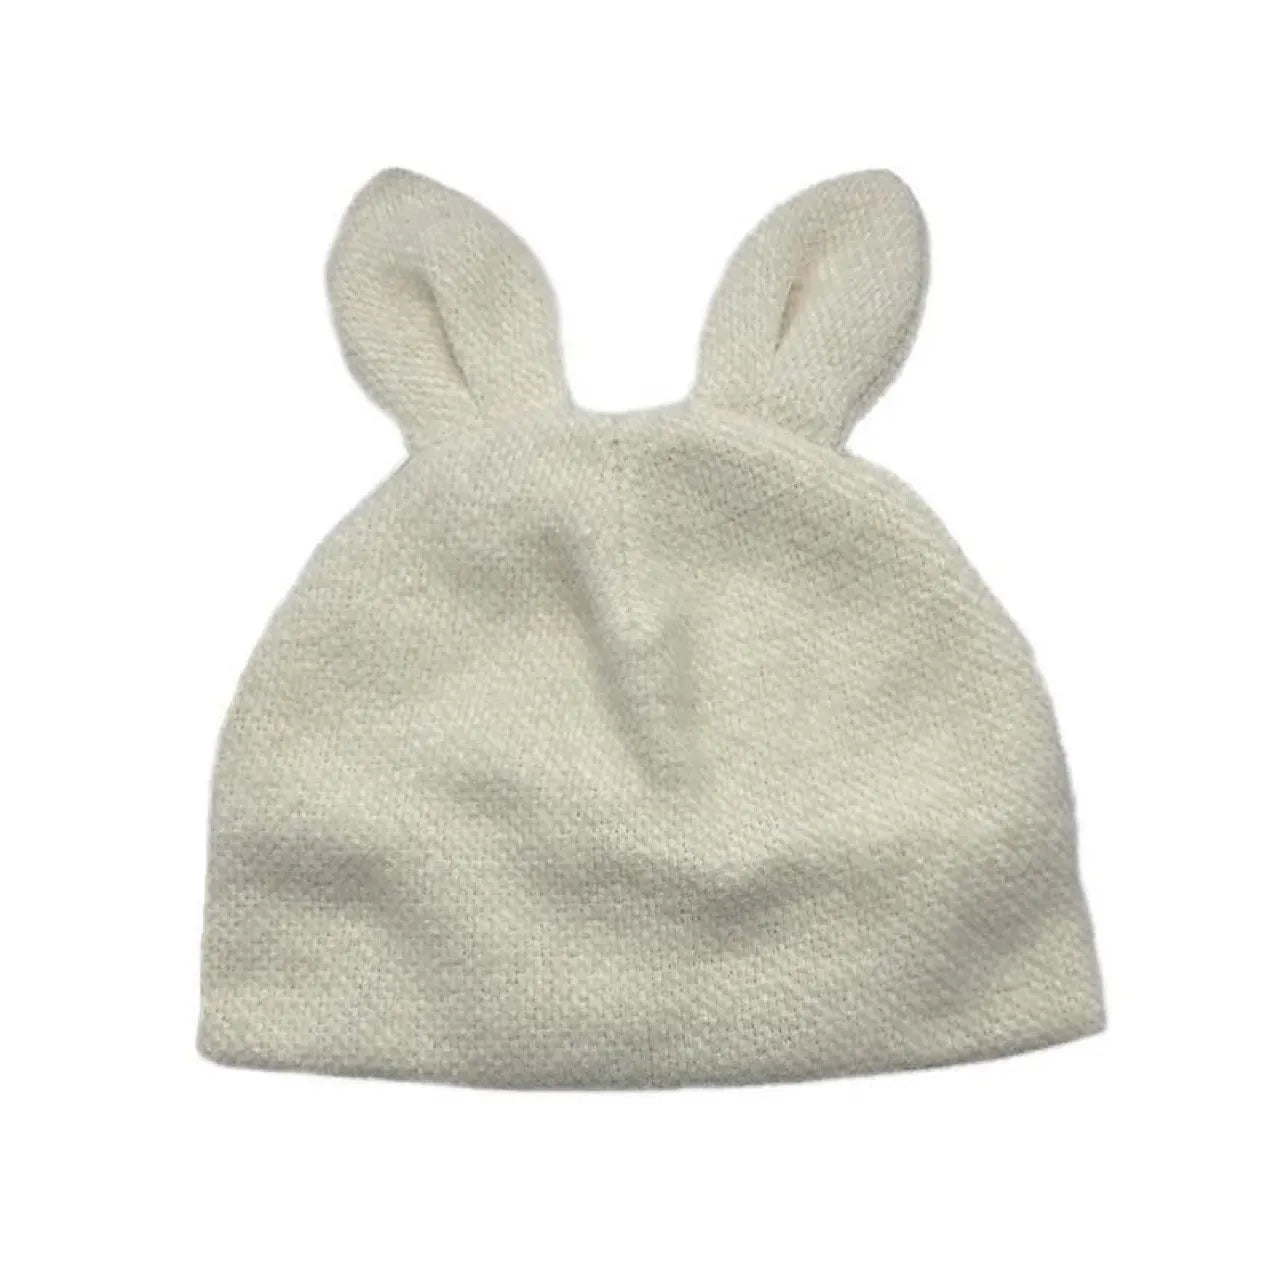 Soft Bunny Ears Beanie